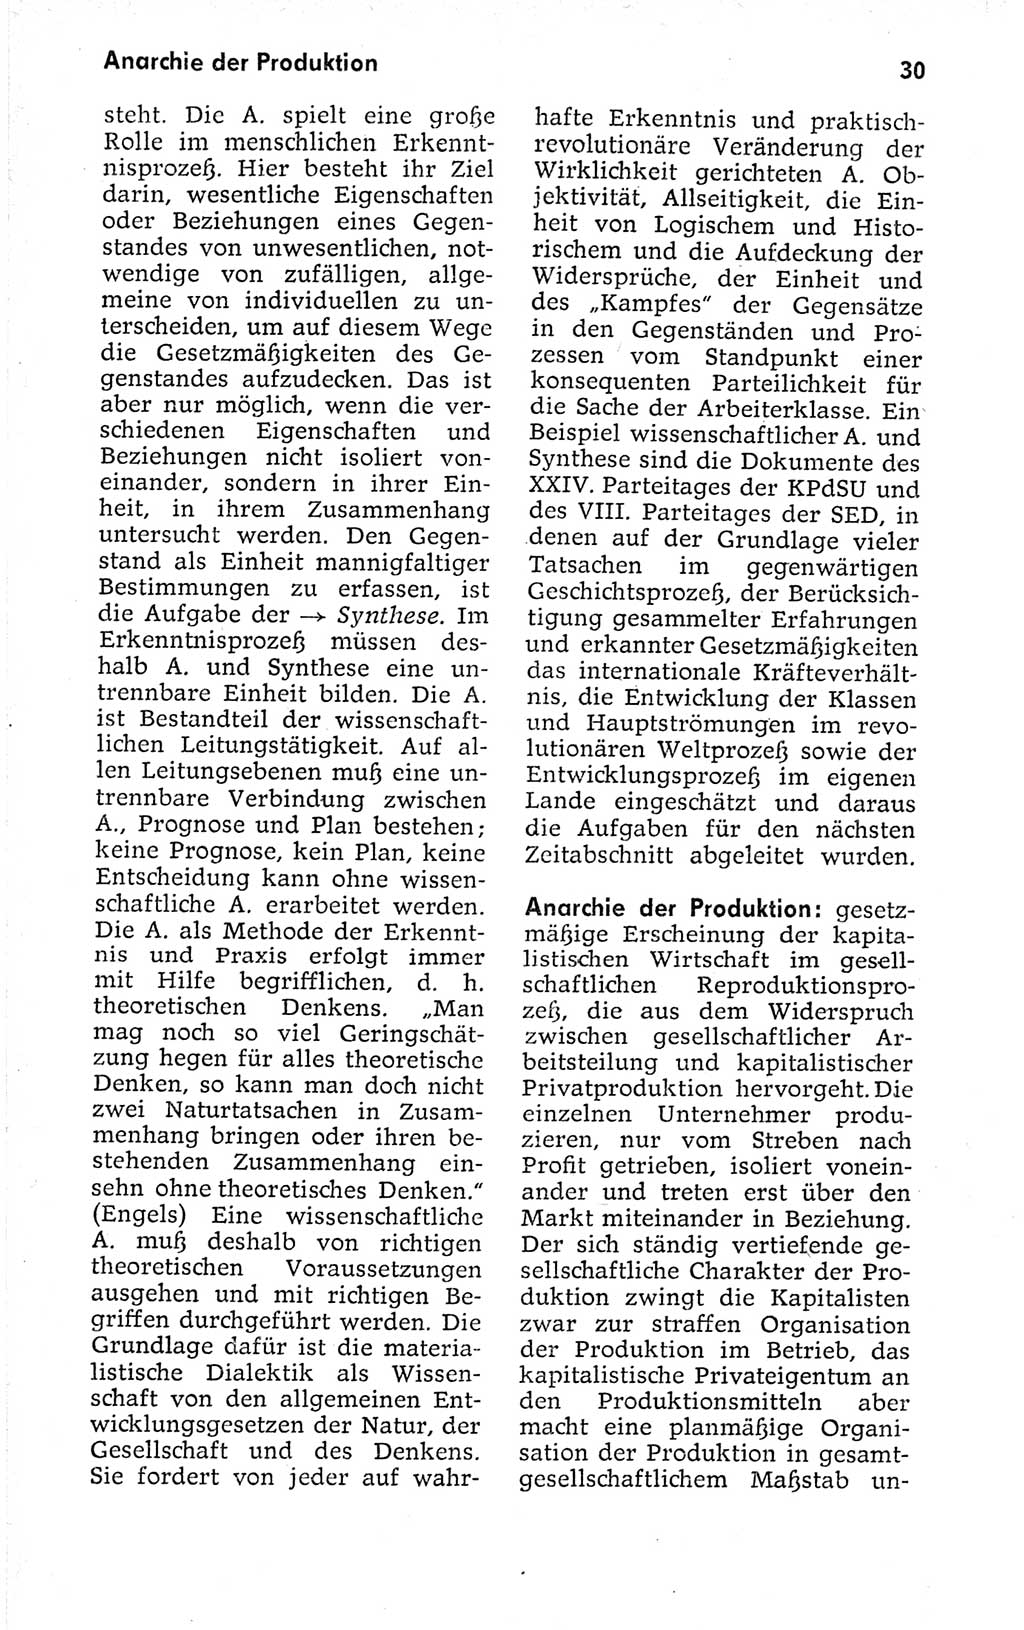 Kleines politisches Wörterbuch [Deutsche Demokratische Republik (DDR)] 1973, Seite 30 (Kl. pol. Wb. DDR 1973, S. 30)